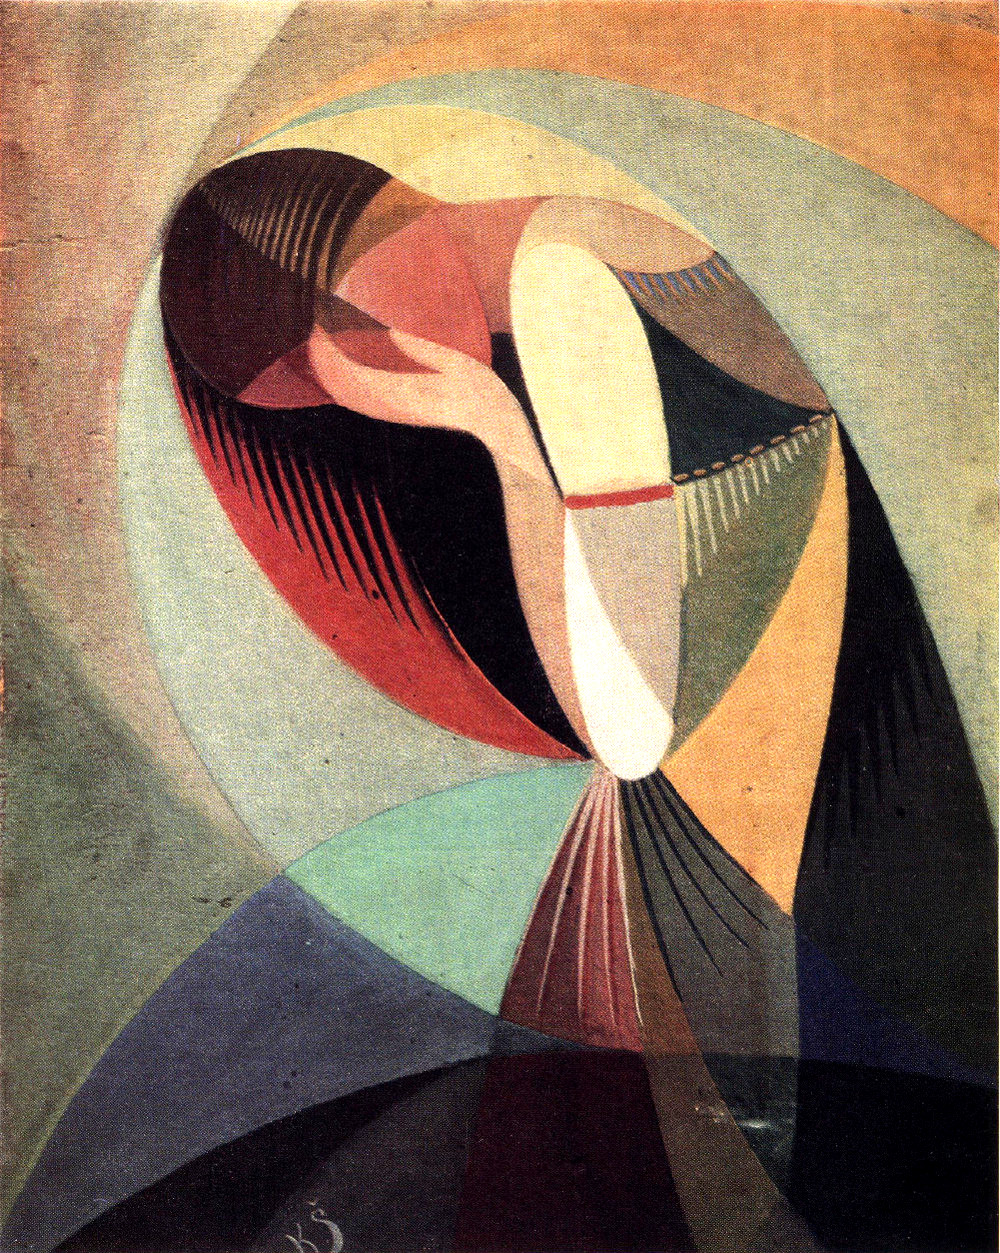    Казис Шимонис, живопись и книжная графика | Отчаяние. 1926